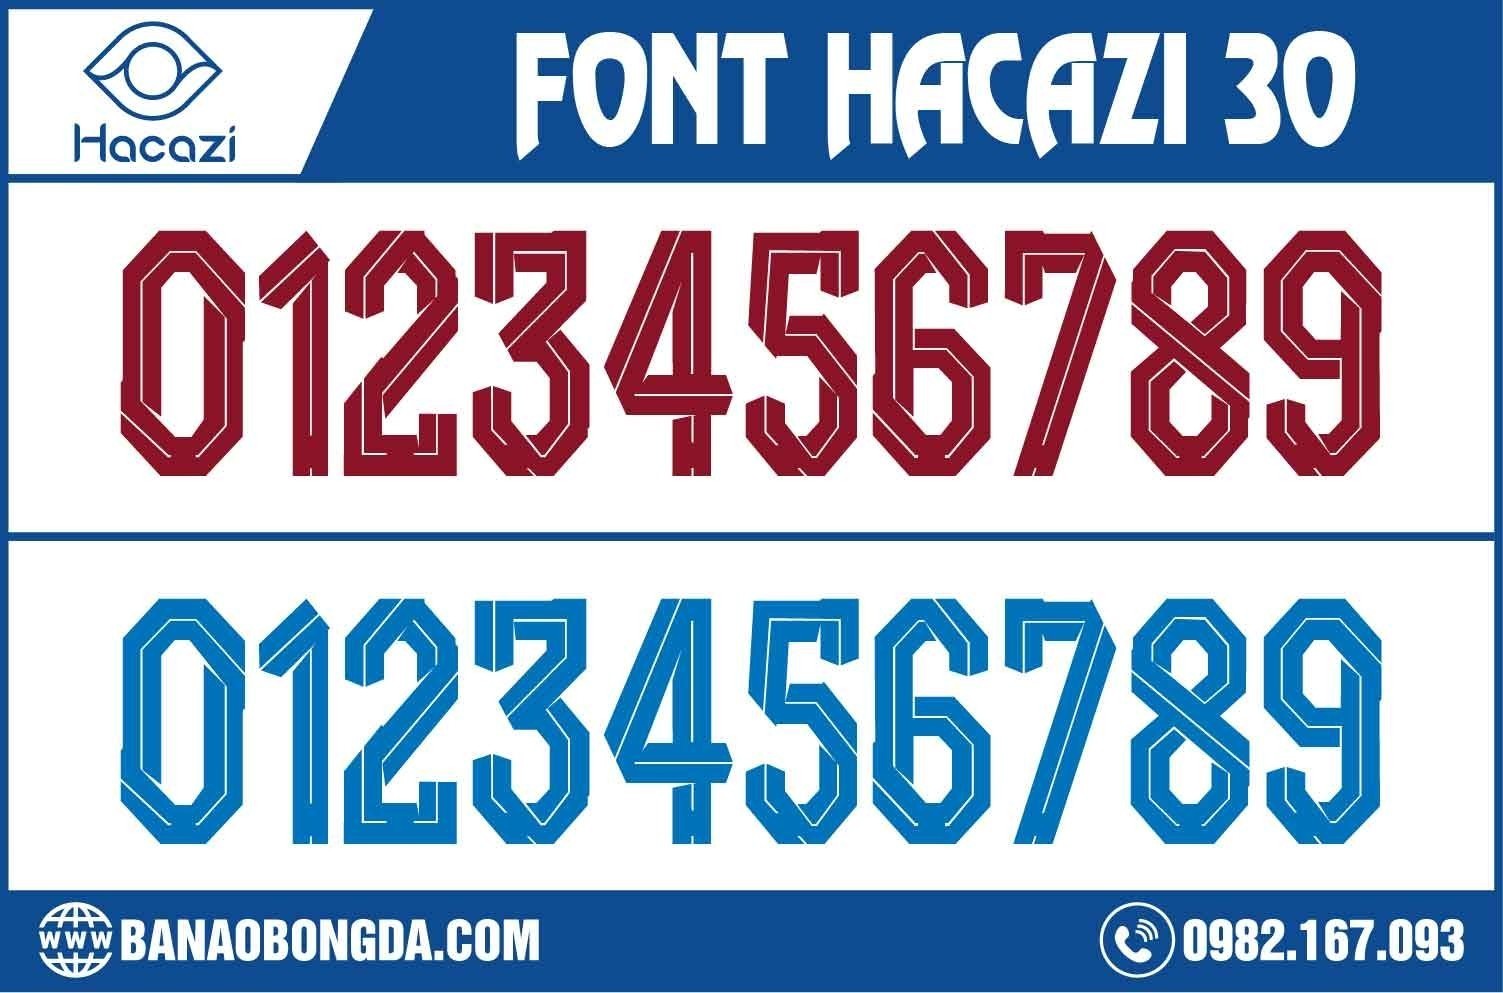  Thật hoàn hảo khi bạn sở hữu được cho mình bộ font số áo bóng đá 30 tại Shop Hacazi Sport chúng tôi. Bộ font số được thiết kế theo một phong cách hiện đại, chỉ có 1 - 0 2 trên thị trường. Đặc biệt sẽ không bị trùng lặp nhé! 